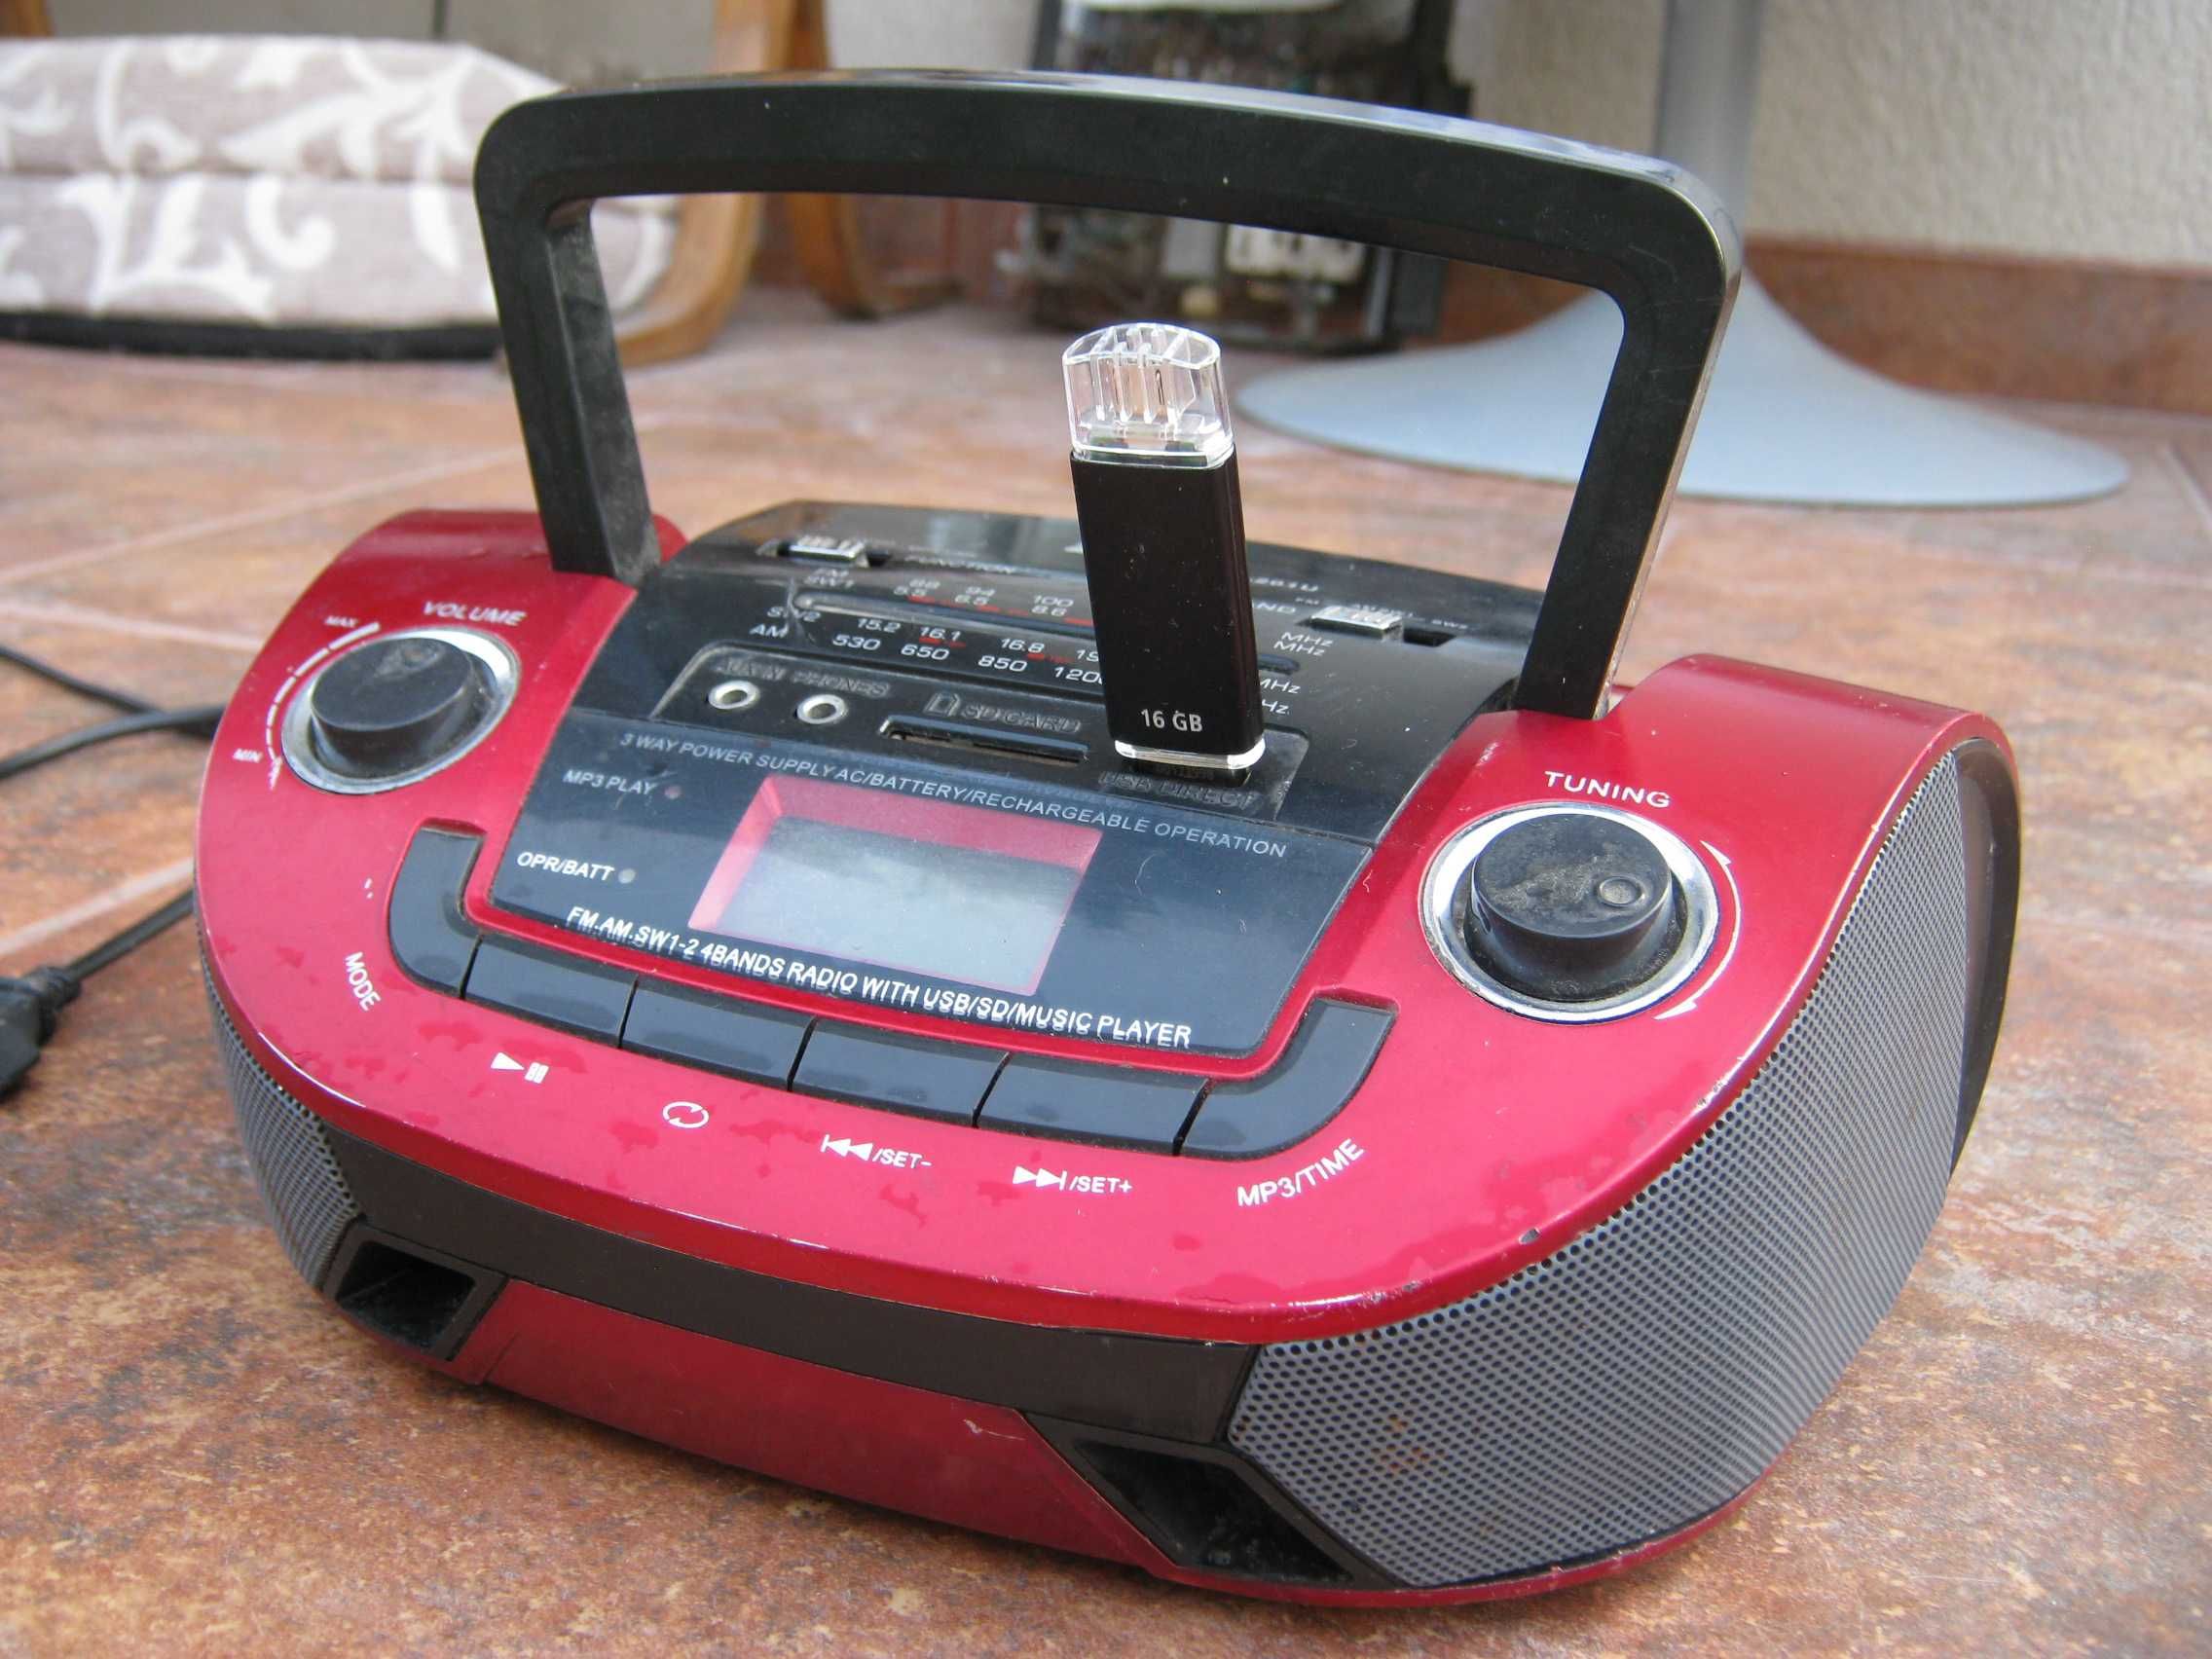 Radio rosu frumos cu stick card, stereo cu baterii si la priza